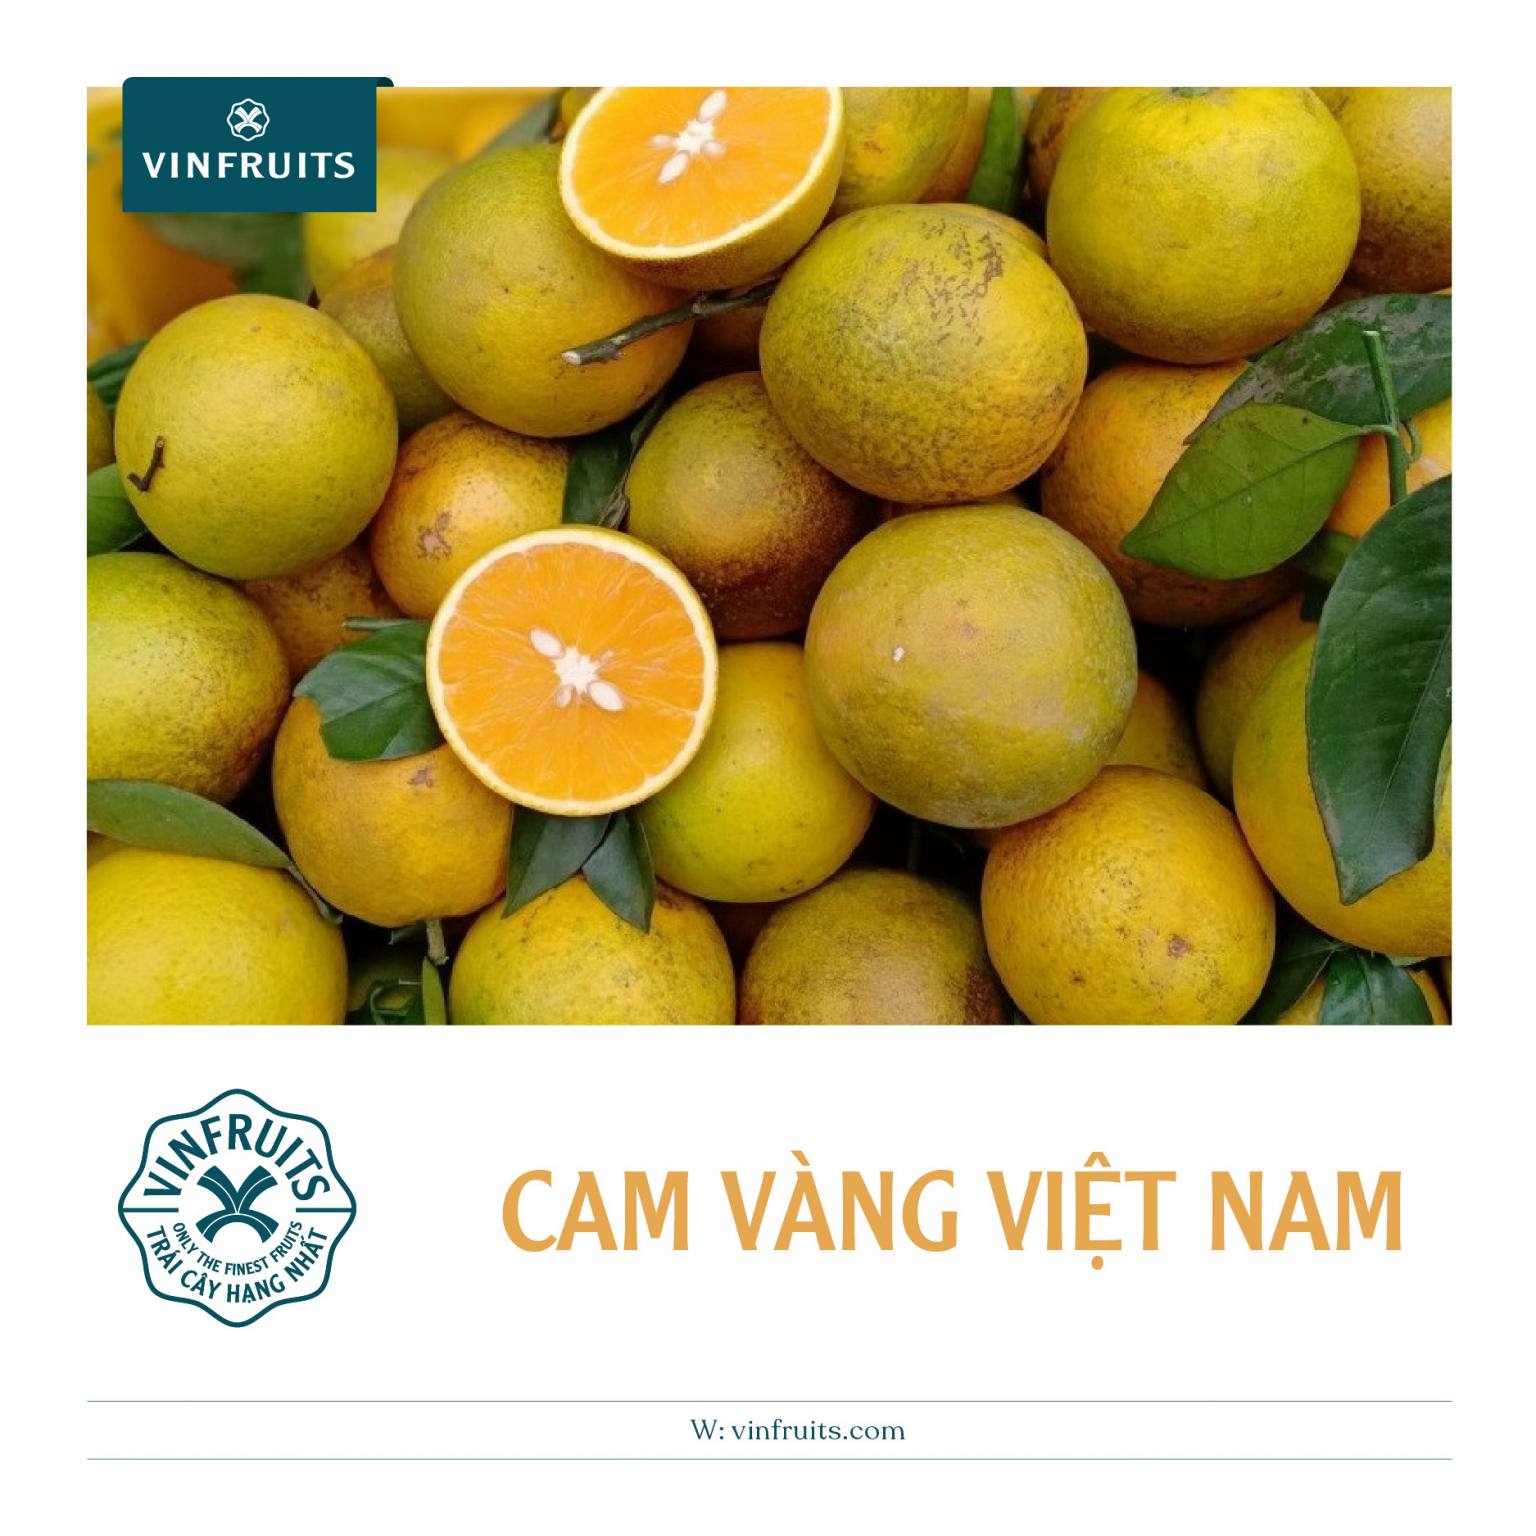 Cam sành Việt Nam & Trung Quốc